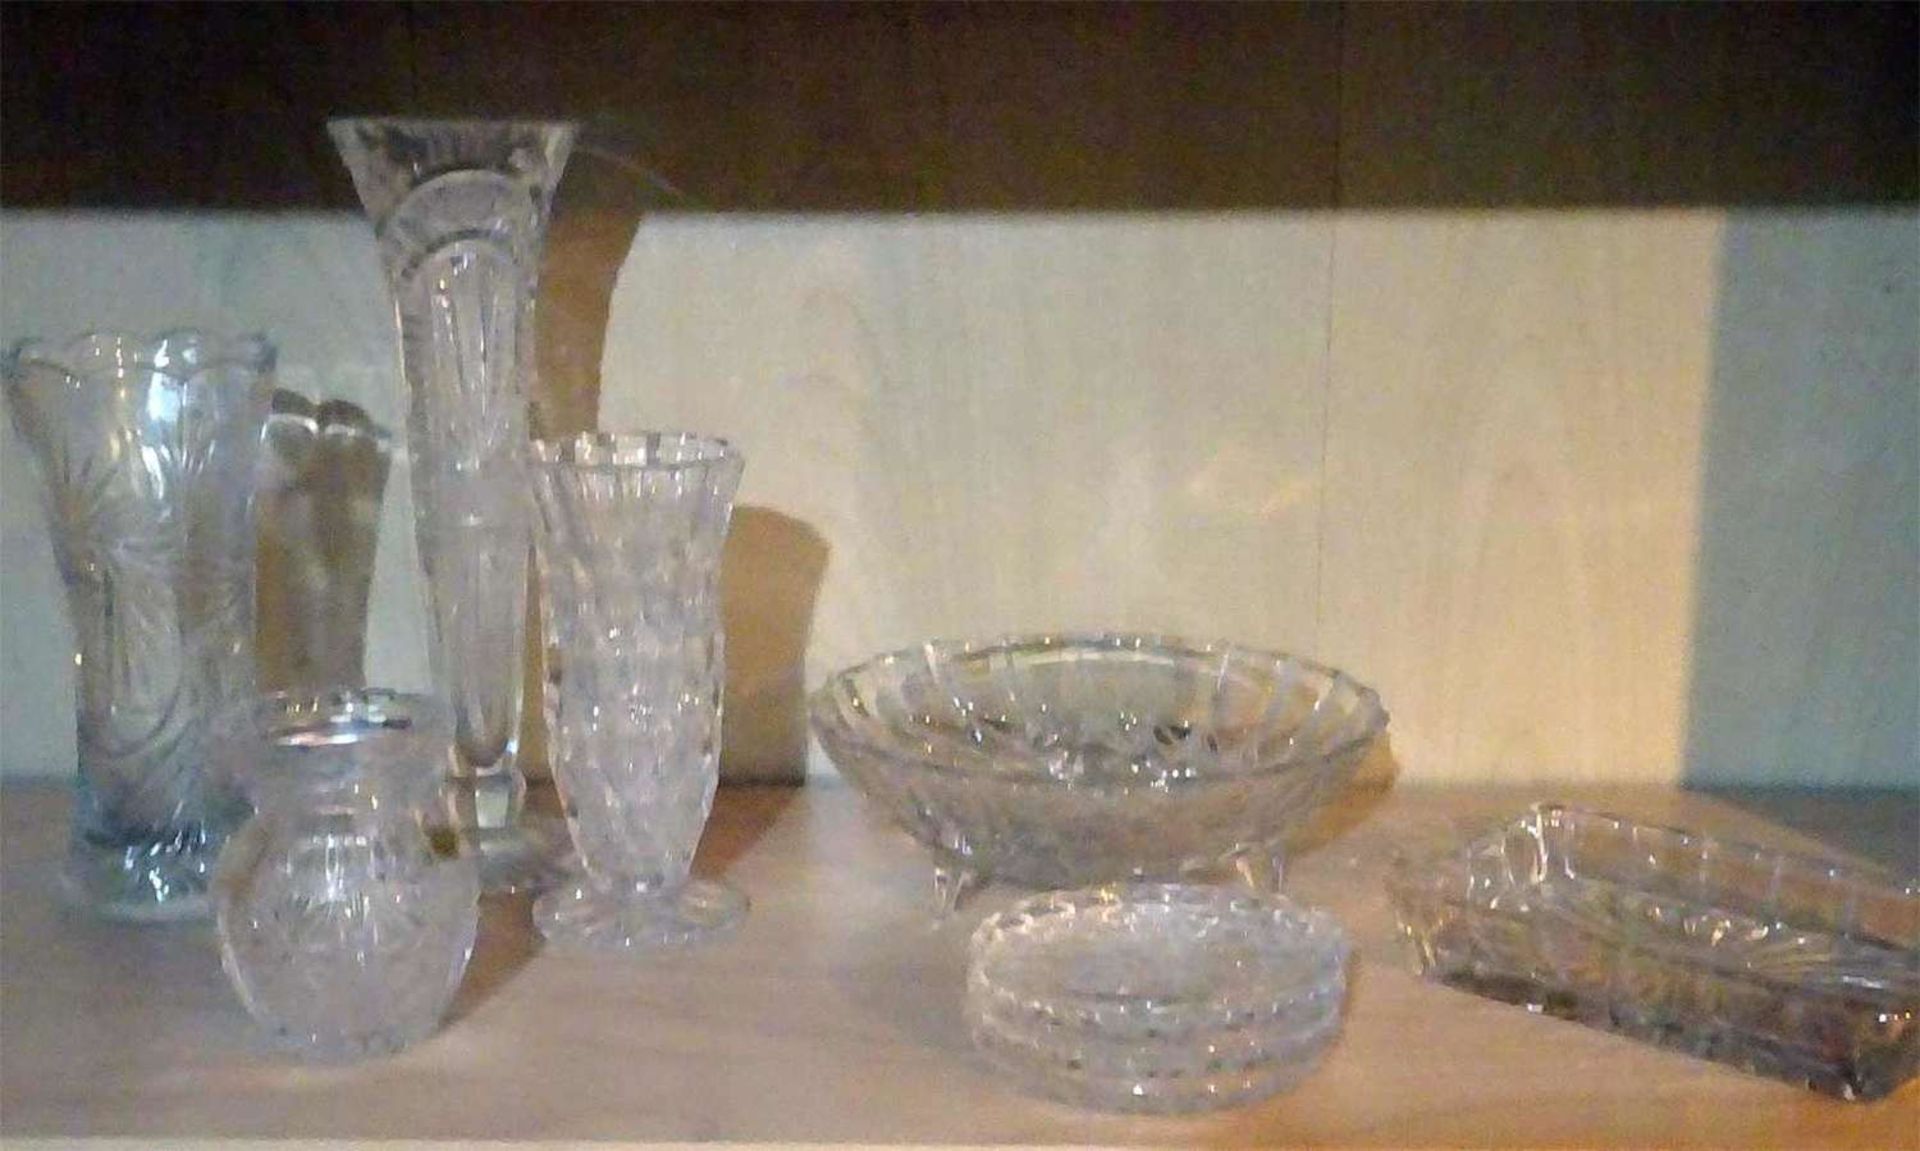 Lot Kristallglas, bestehend aus 4 Vasen, 1 Schüssel, 3 Untersetzer, sowie 1 Schale. Verschiedene